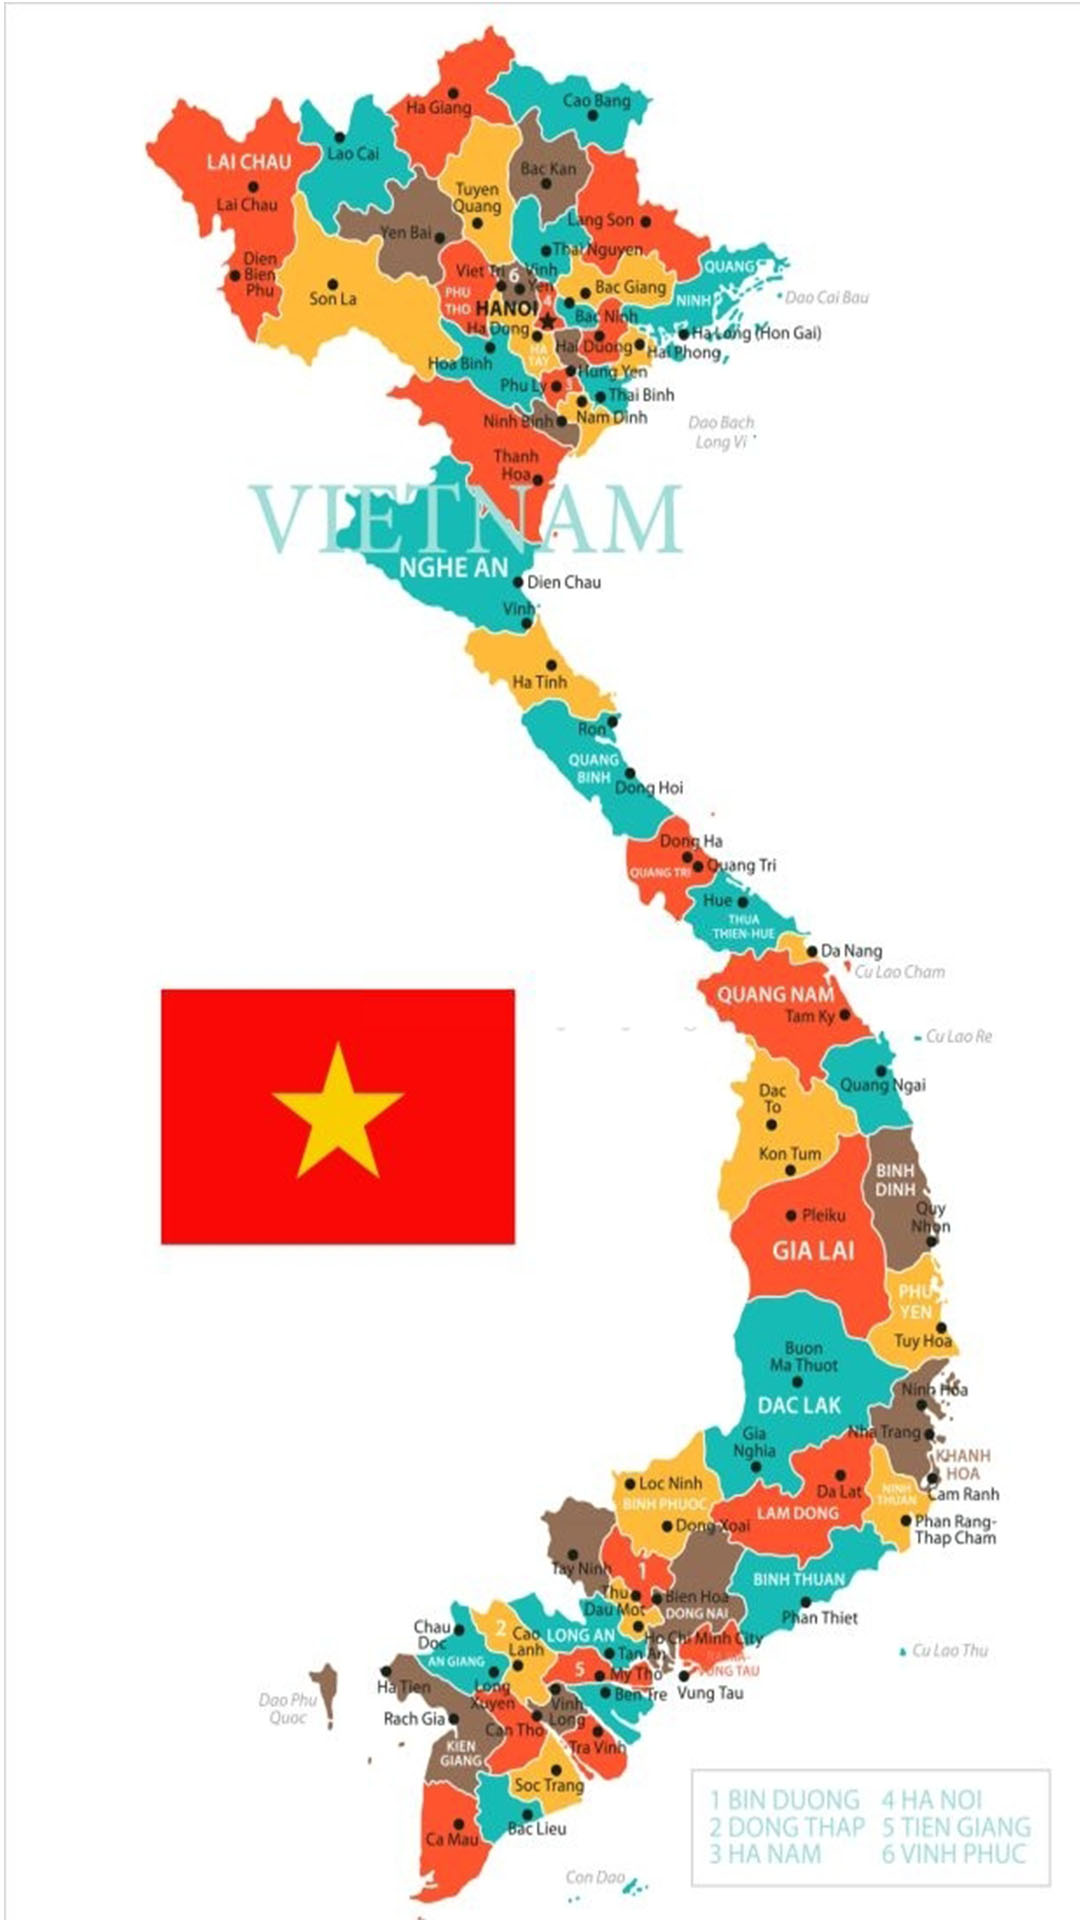 Cờ Việt Nam 2024 sẽ là một biểu tượng văn hoá đặc trưng của quốc gia, thể hiện sự tôn trọng và đồng hành với quá trình xây dựng và phát triển của đất nước. Với sứ mệnh mang lại niềm vinh dự cho người dân Việt Nam, cờ Việt Nam 2024 đang được chế tác với sự quan tâm và chăm sóc kỹ lưỡng từ những nghệ nhân tài ba.